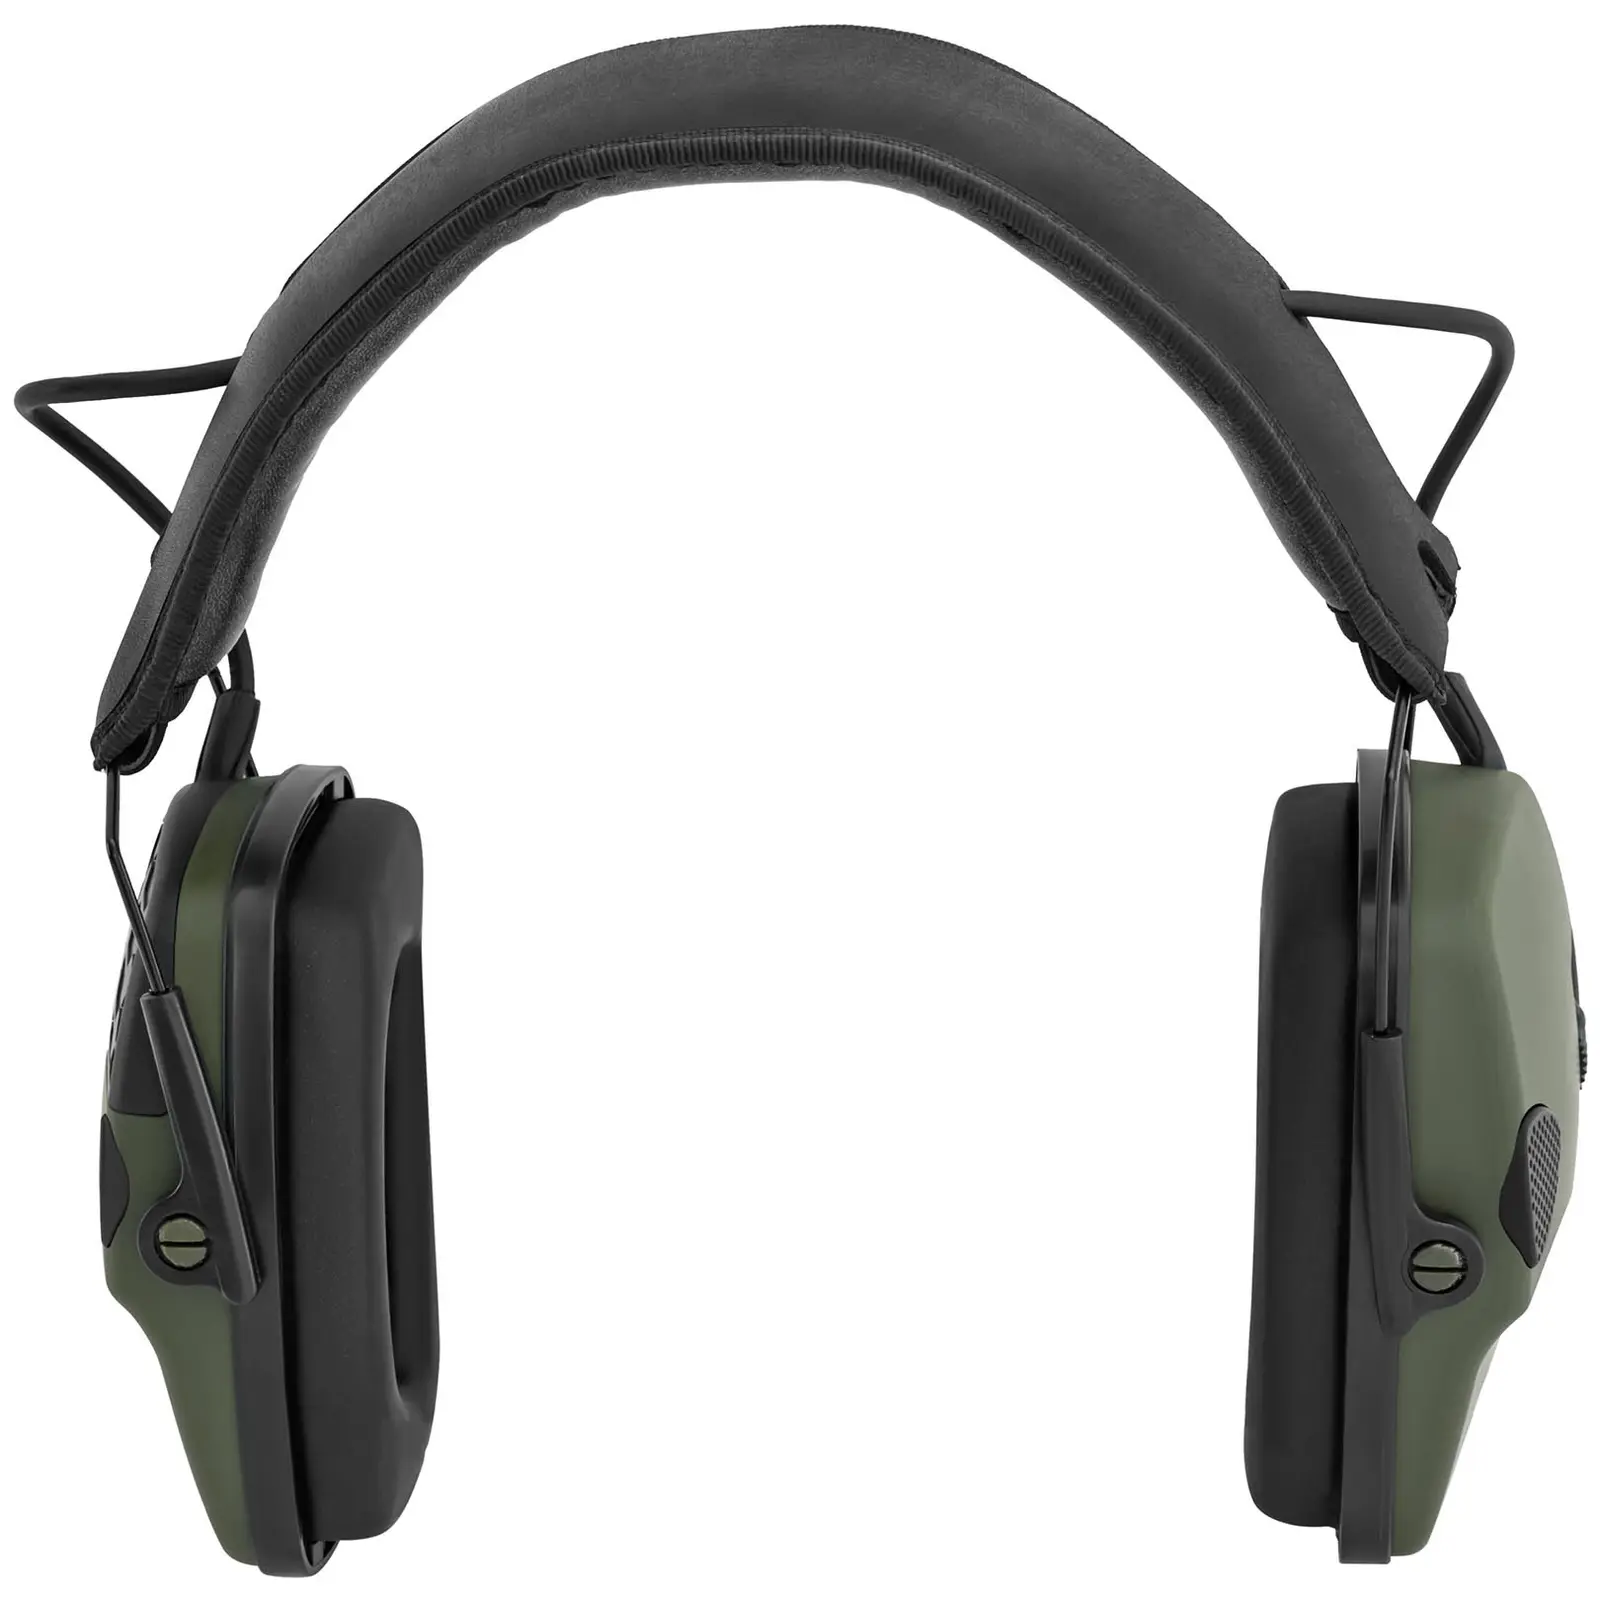 Støyreduserende hodetelefoner - dynamisk ekstern støykontroll - grønn